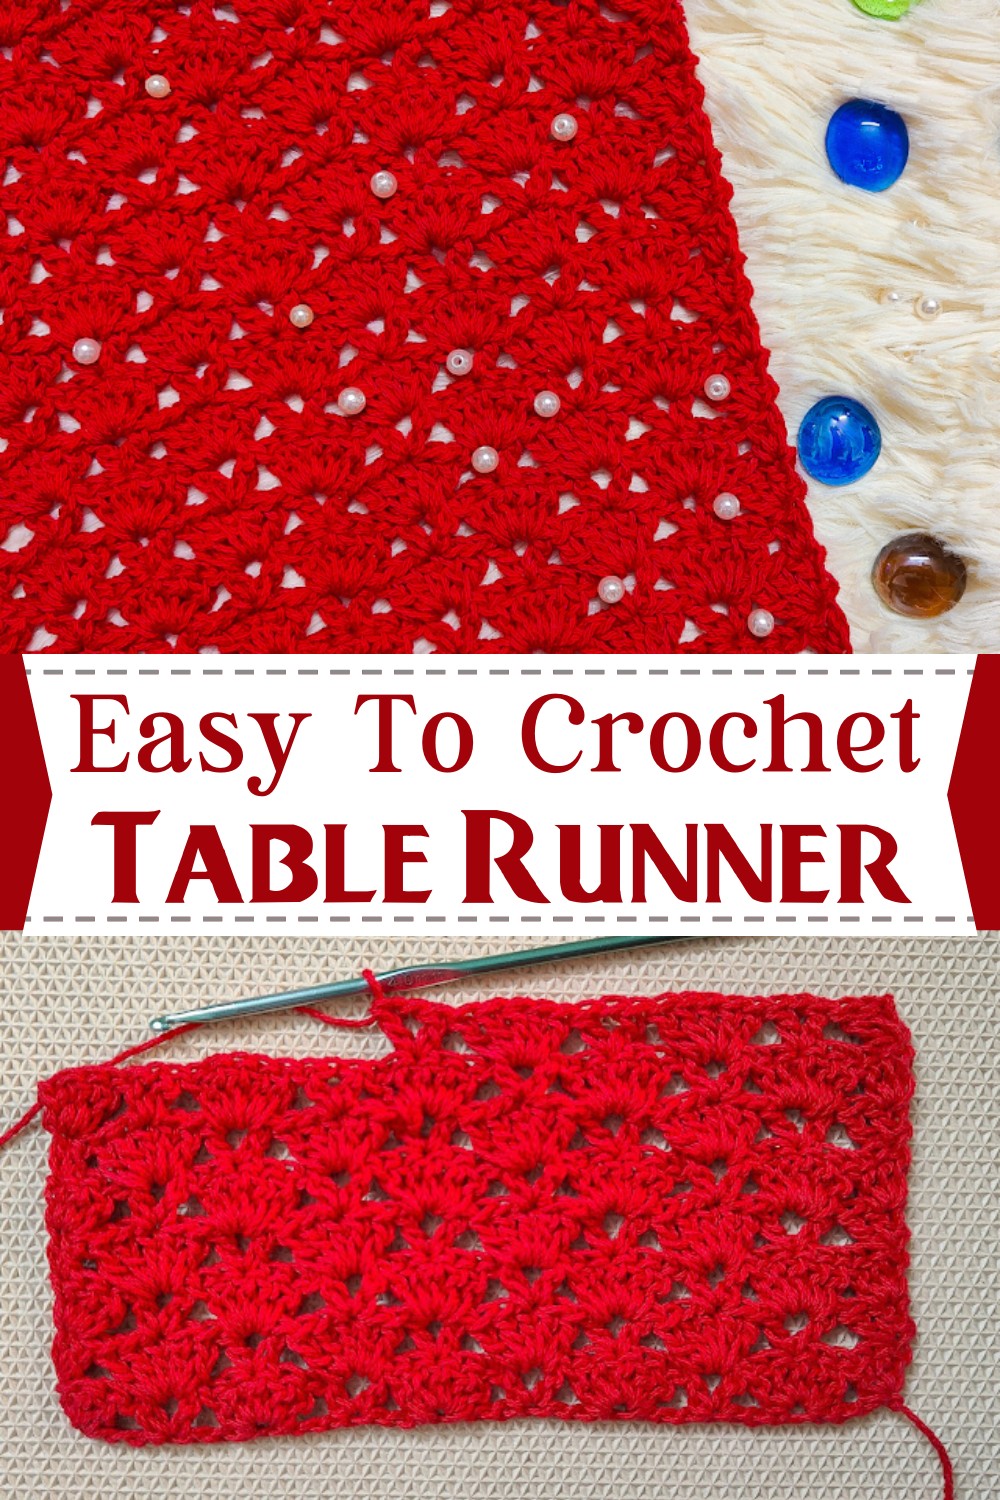 Easy To Crochet Table Runner